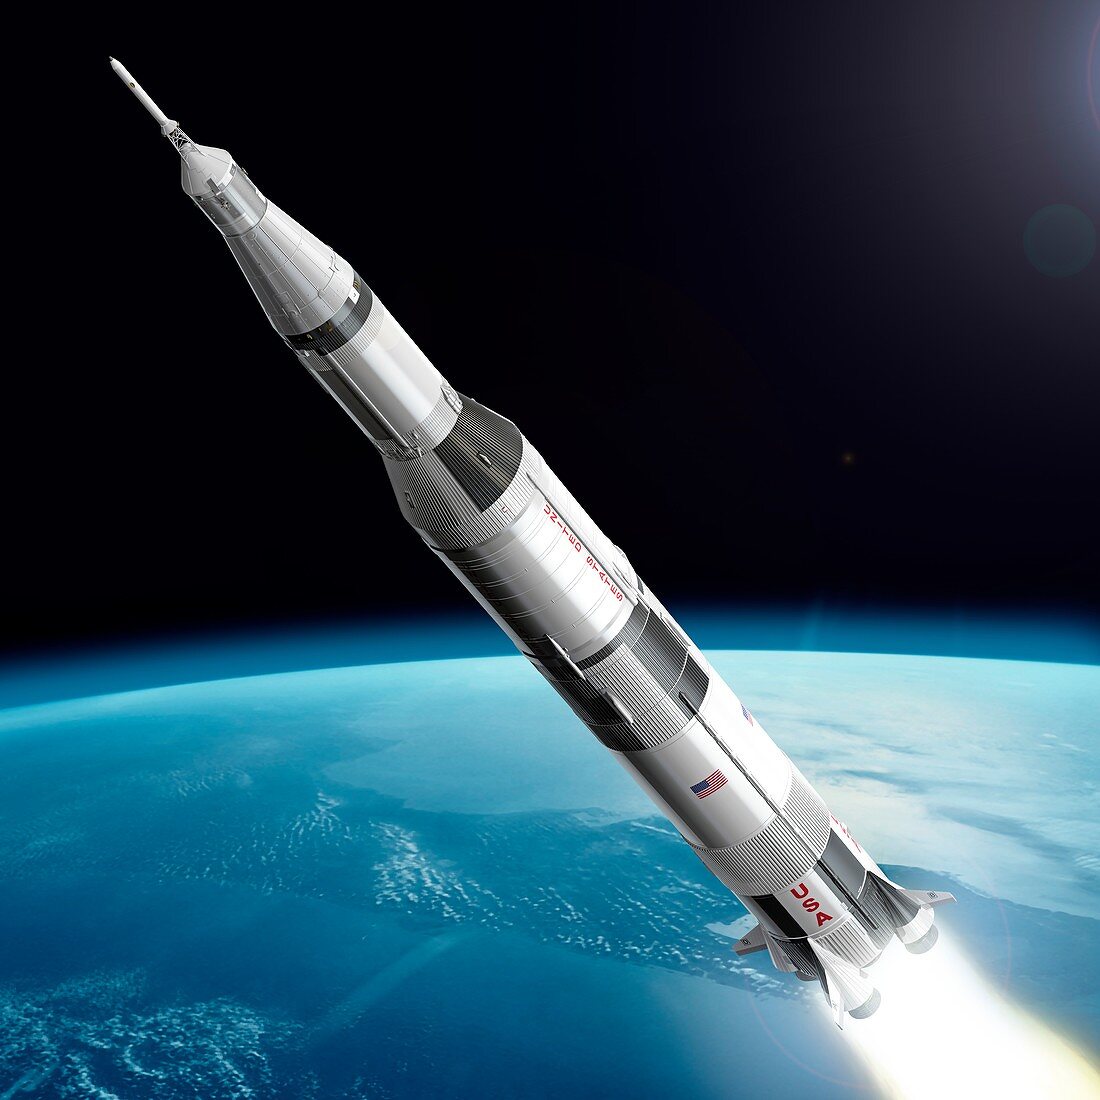 Saturn V rocket launch, illustration